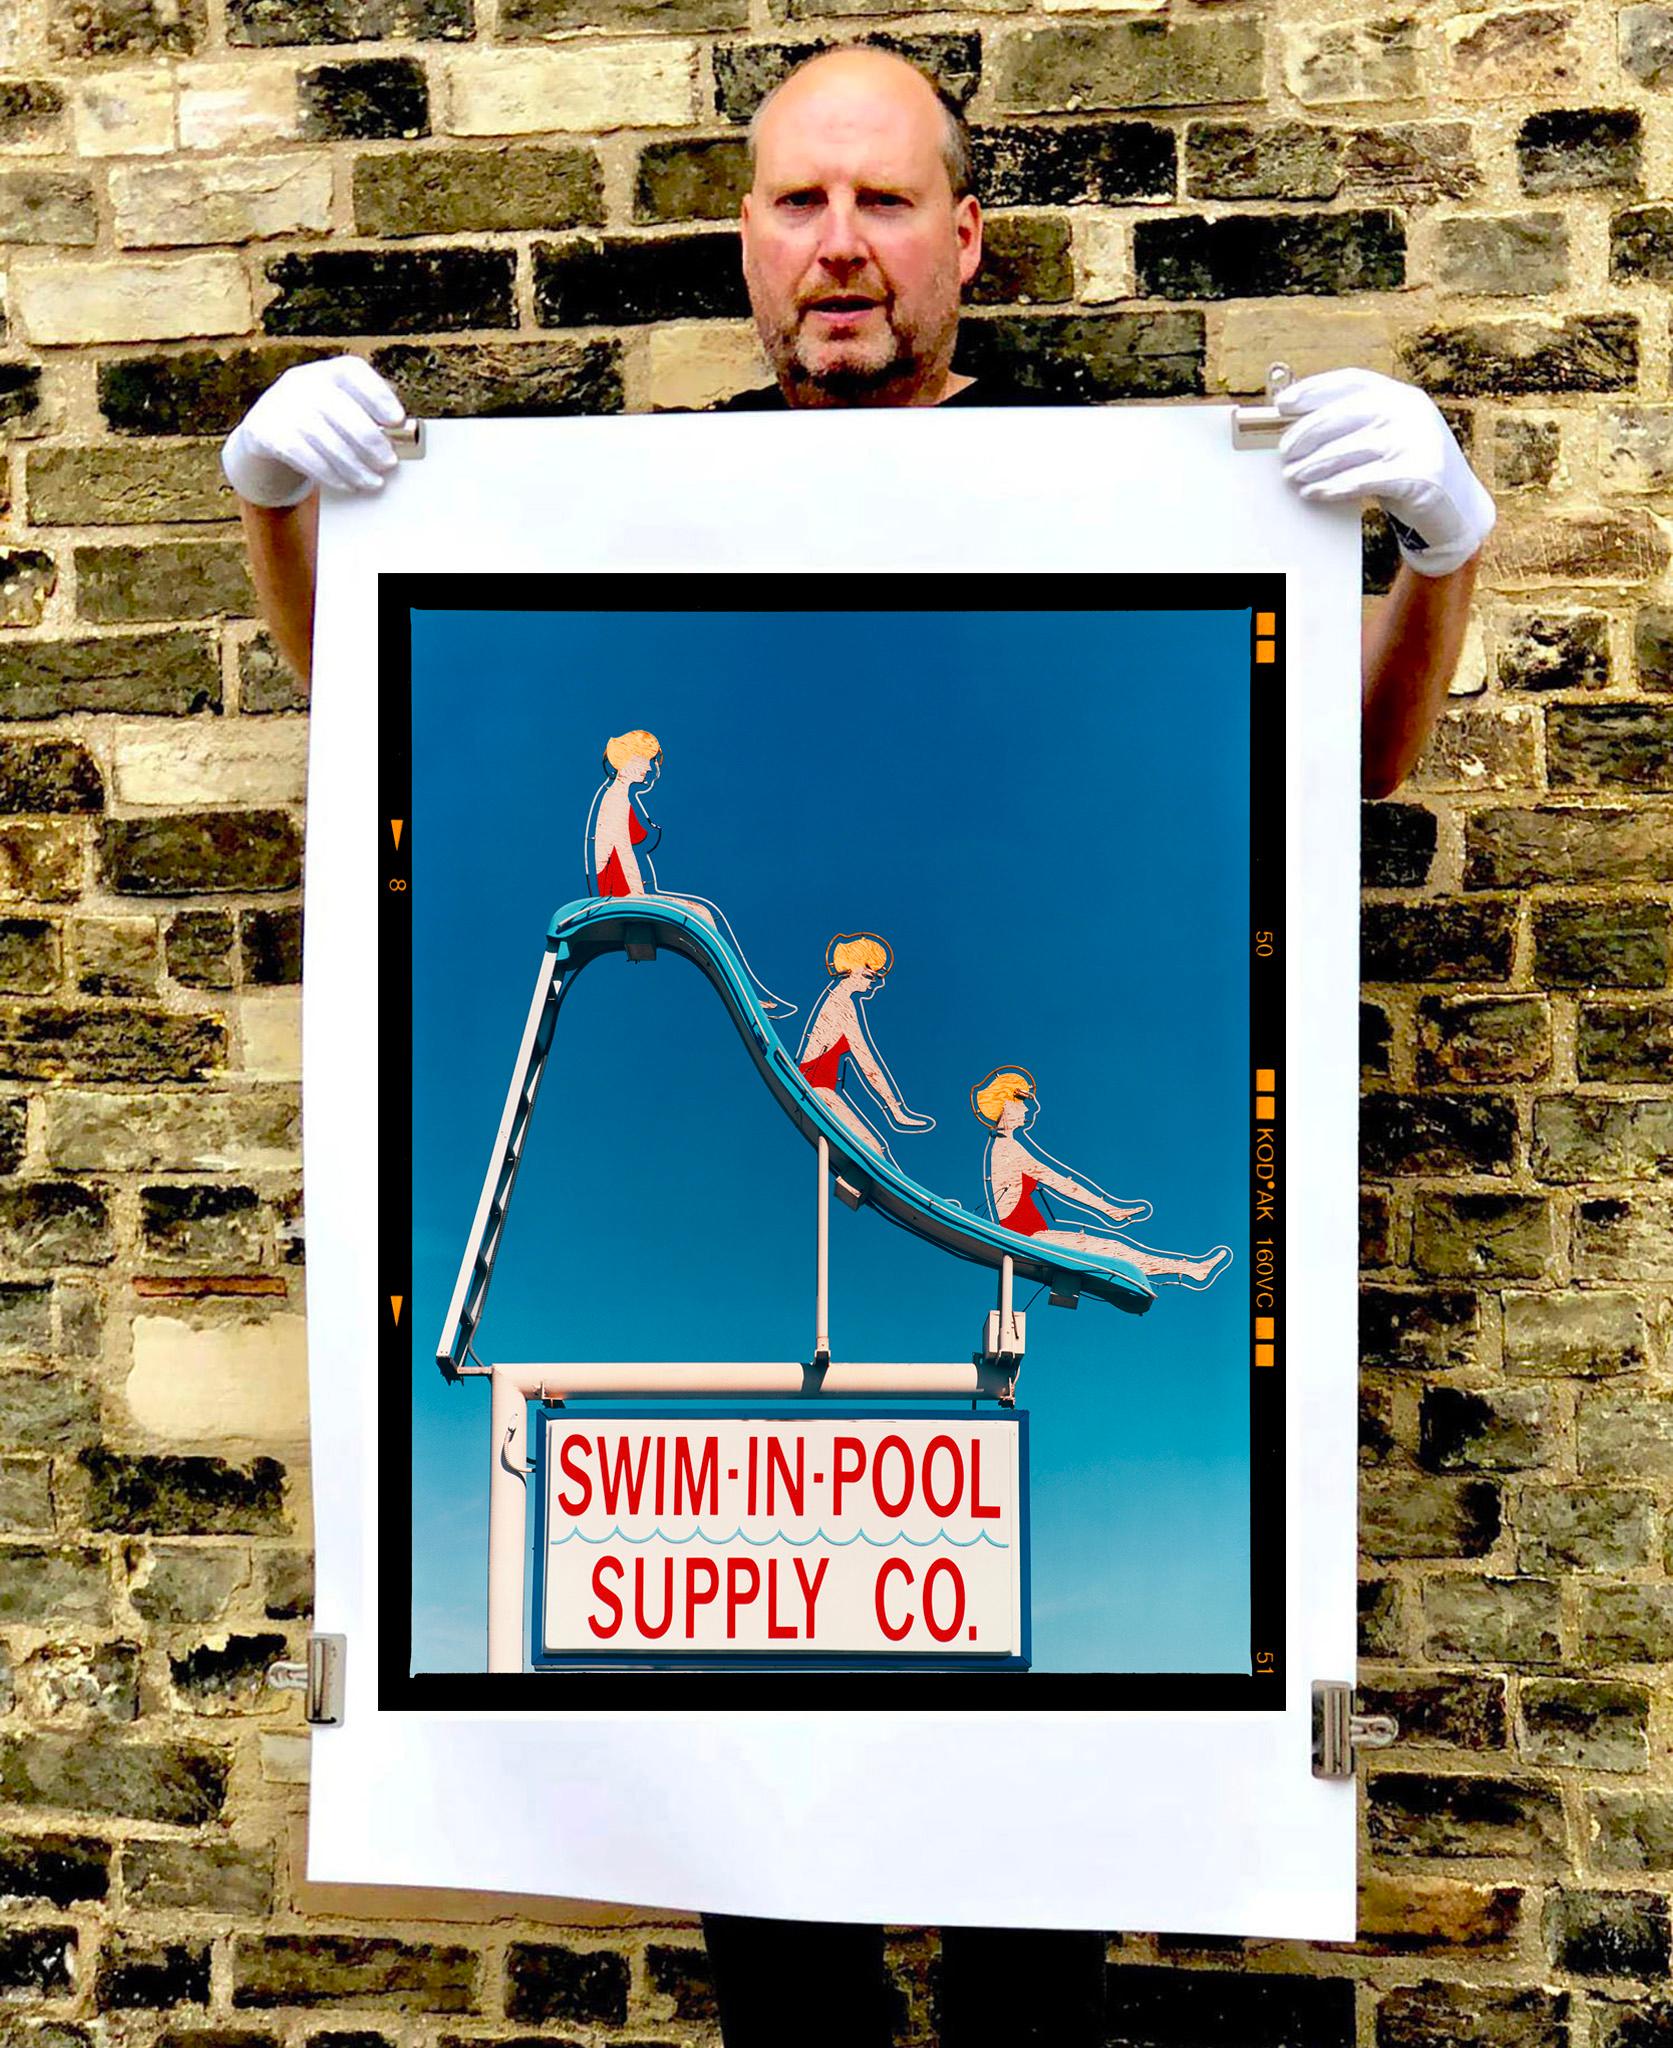 Swim-in-Pool Supply Co. Cette œuvre d'art originale et amusante montre vraiment l'œil unique de Richard en tant que photographe. Capturée à Vega en 2003, elle fait partie d'une série qu'il a réalisée sur plusieurs années. Les couleurs vives du bleu,